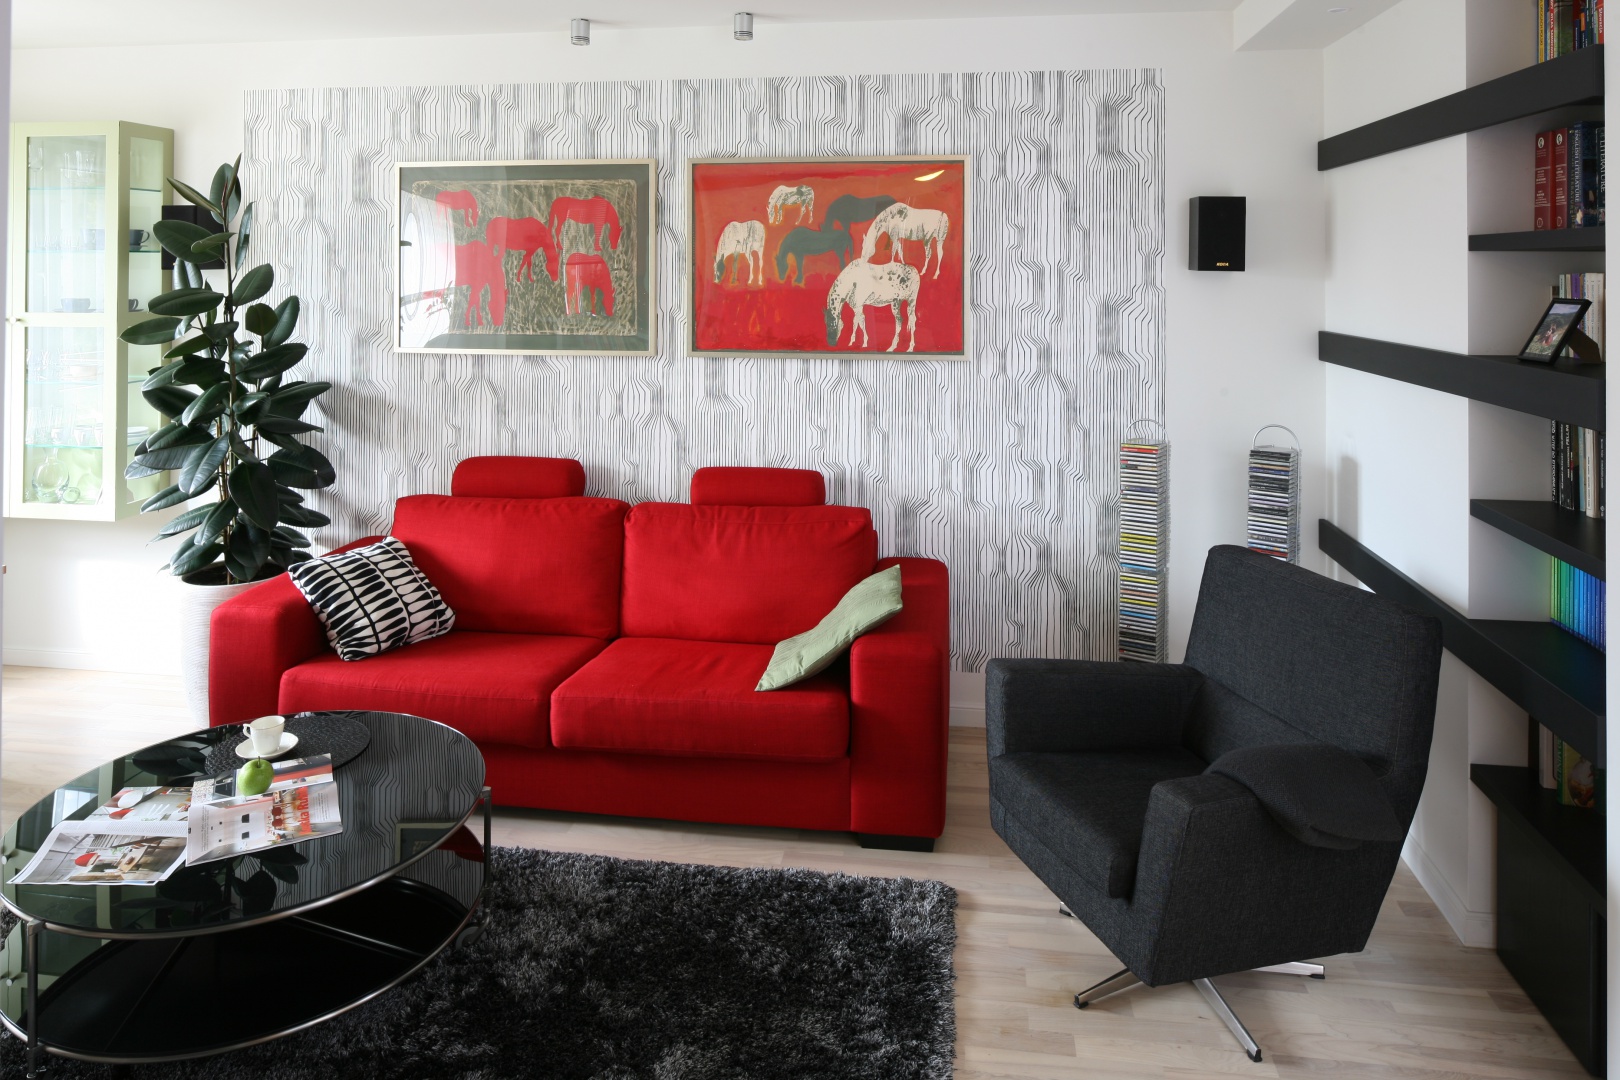 W nowoczesnym salonie biel i czerń tworzą subtelne tło dla intensywnej czerwieni, która emanuje z ekspresyjnych obrazów na całe wnętrze. Projekt: Marta Kruk. Fot. Bartosz Jarosz.